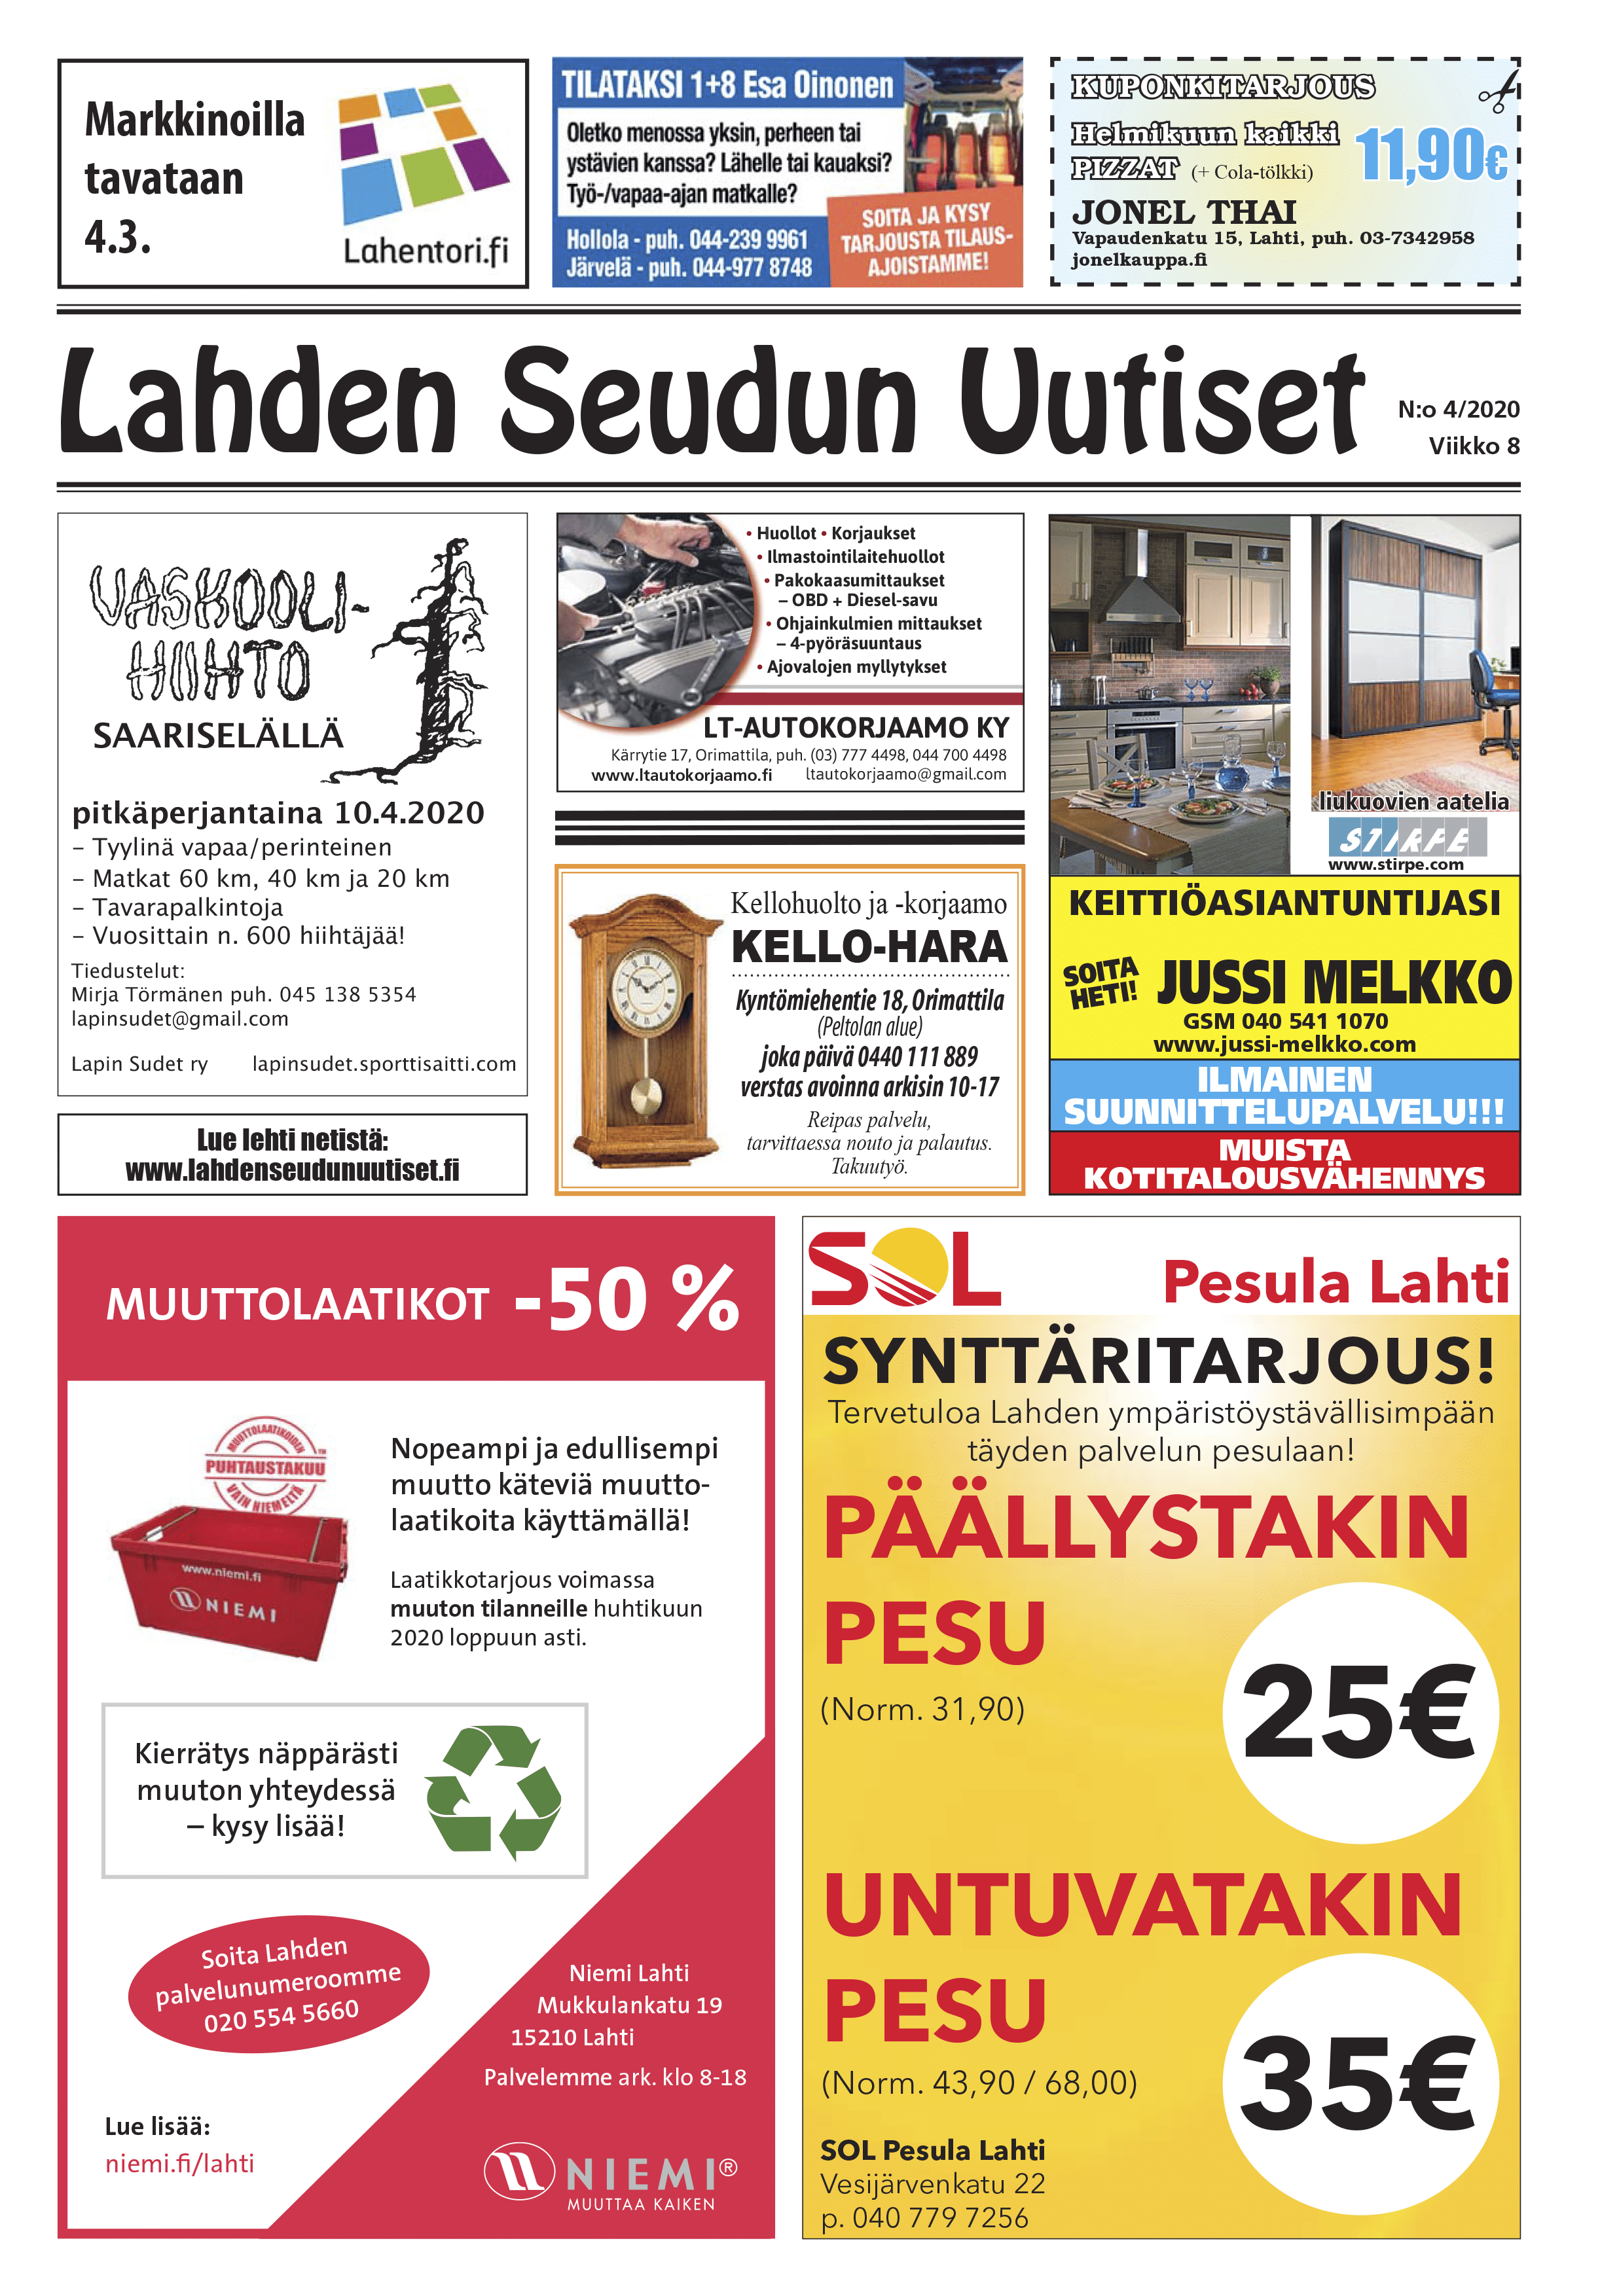 Lahden Seudun Uutiset 4/2020